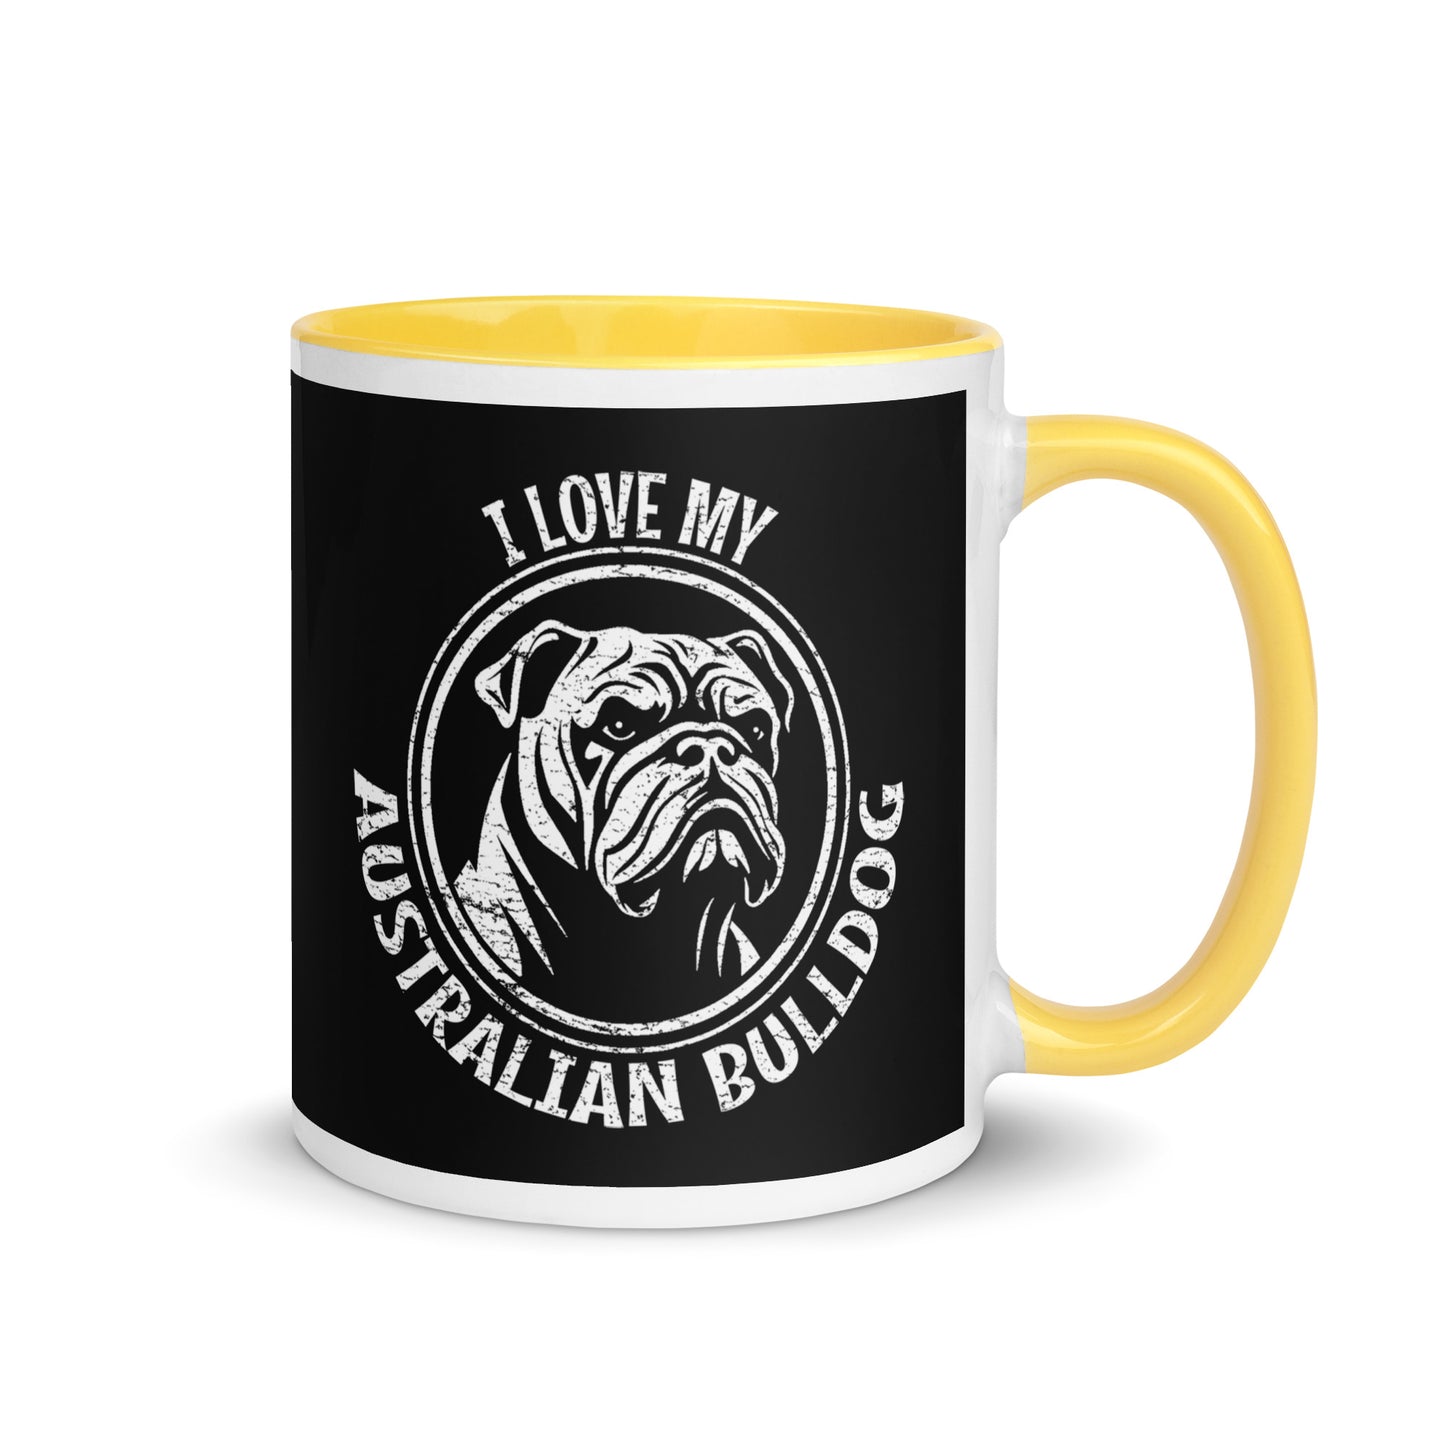 Australian Bulldog Mug, Australian Bulldog gift, gift for dog mom, custom dog gift, dog owner gift, pet memorial gift